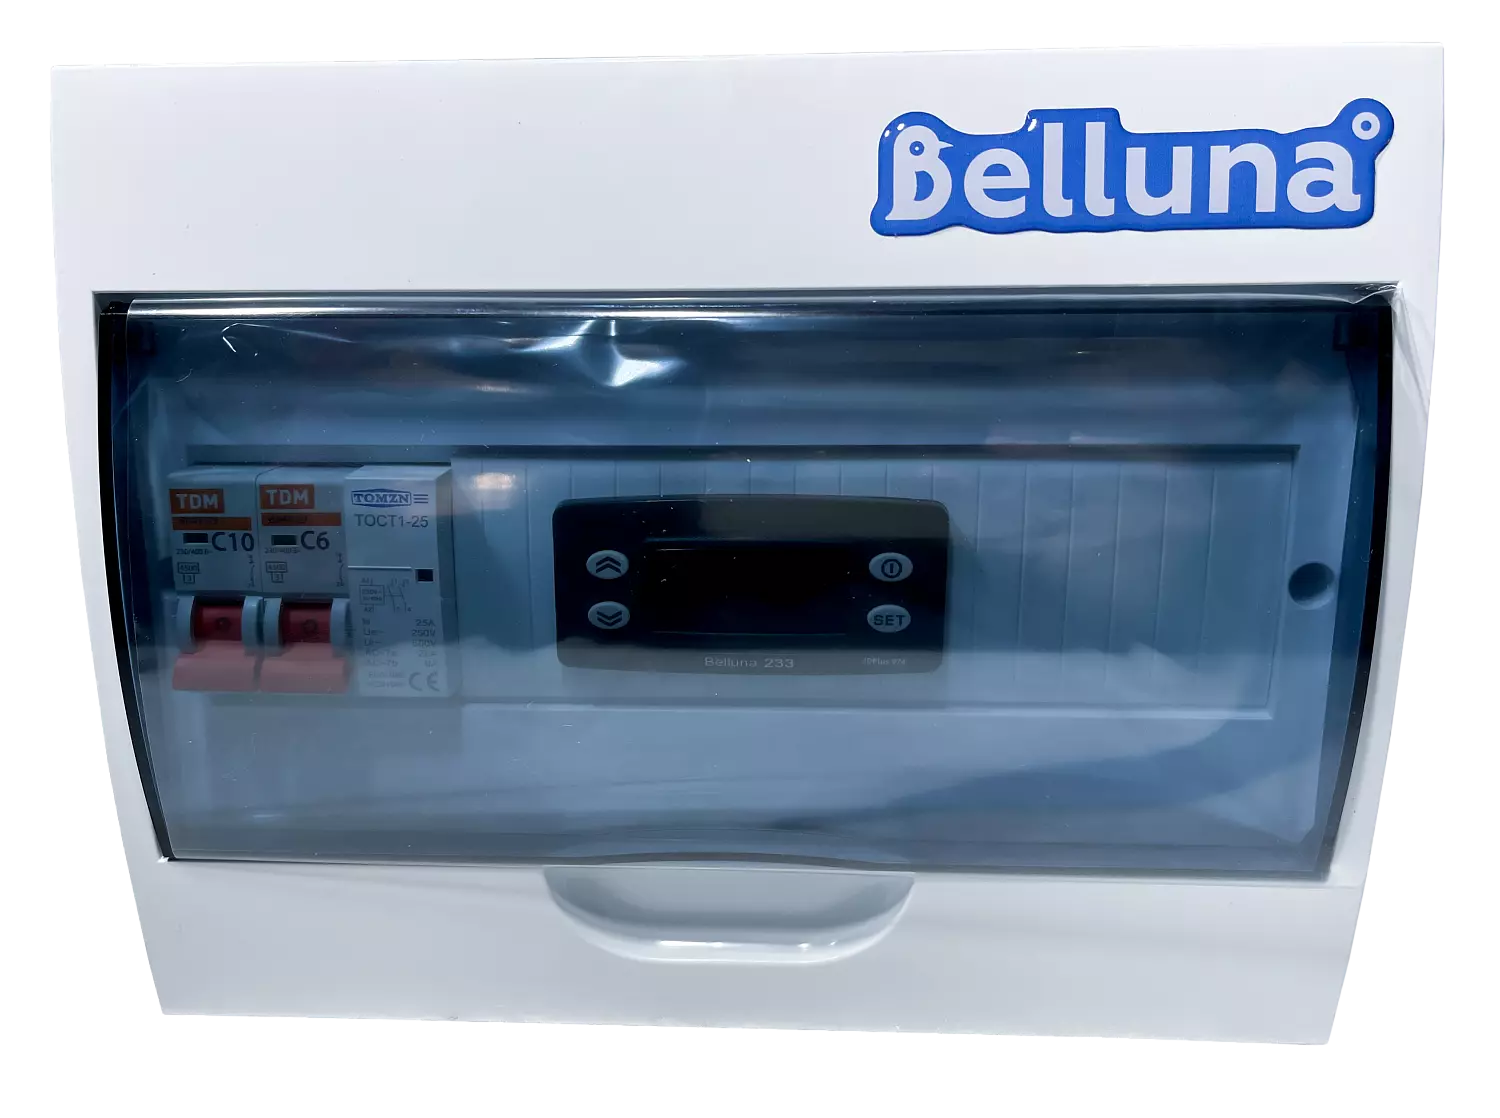 сплит-система Belluna U102-1 Новосибирск